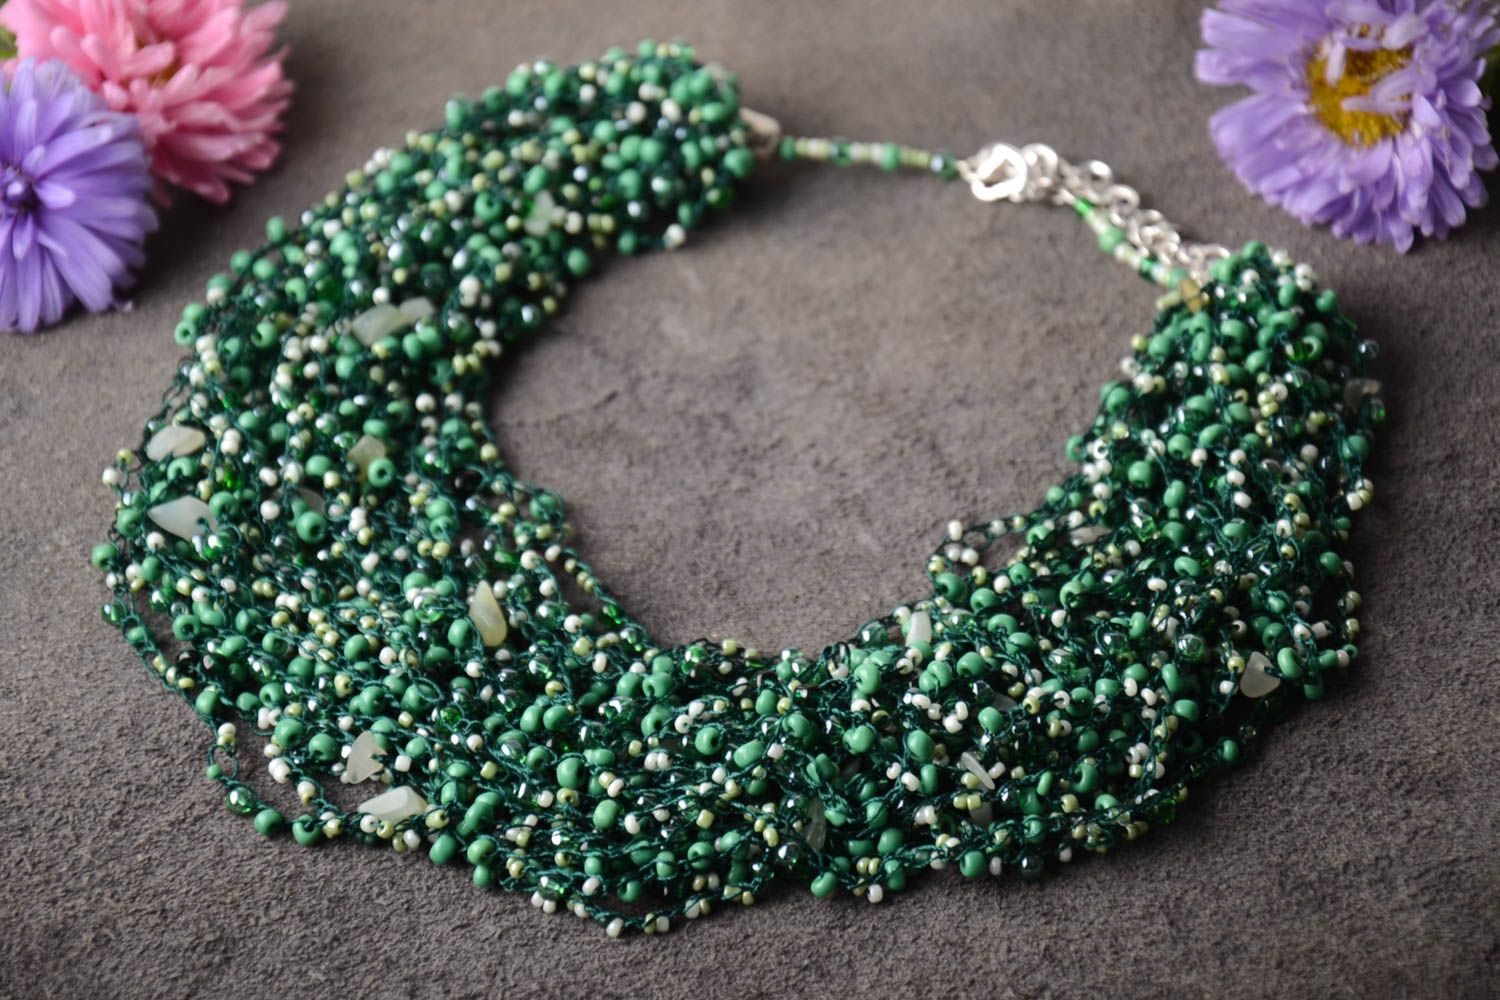 Handmade elegant beaded necklace feminine accessory stunning necklace gift photo 1